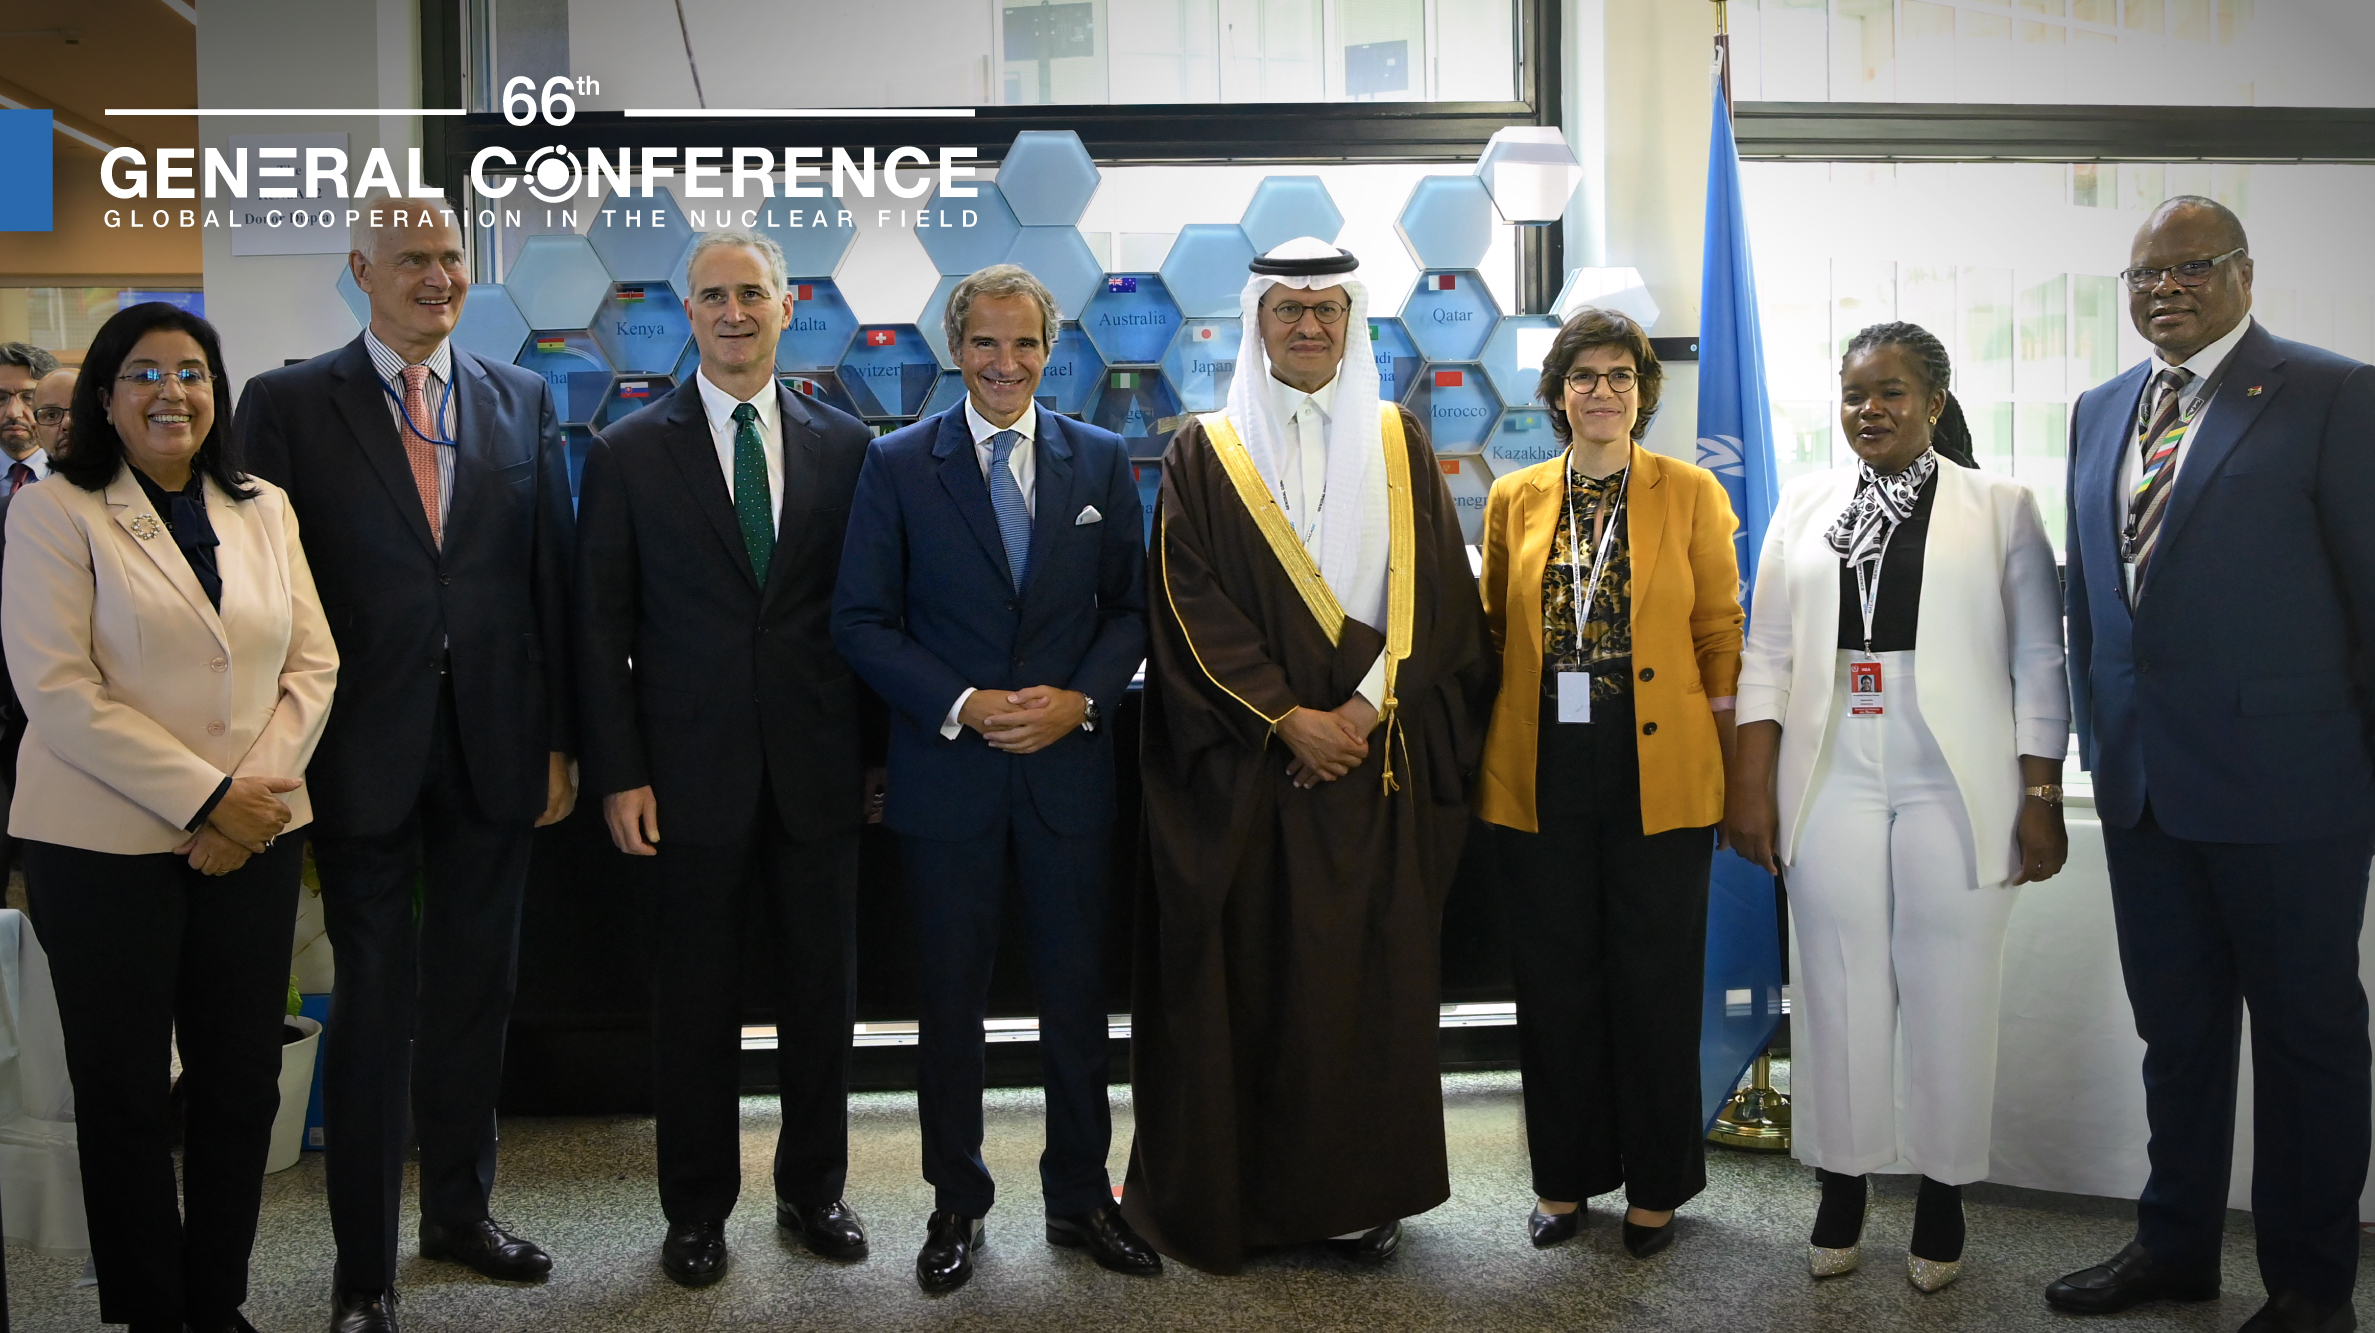 Evenementen van de algemene conferentie benadrukken de sterke steun van het land voor de modernisering van het IAEA-lab